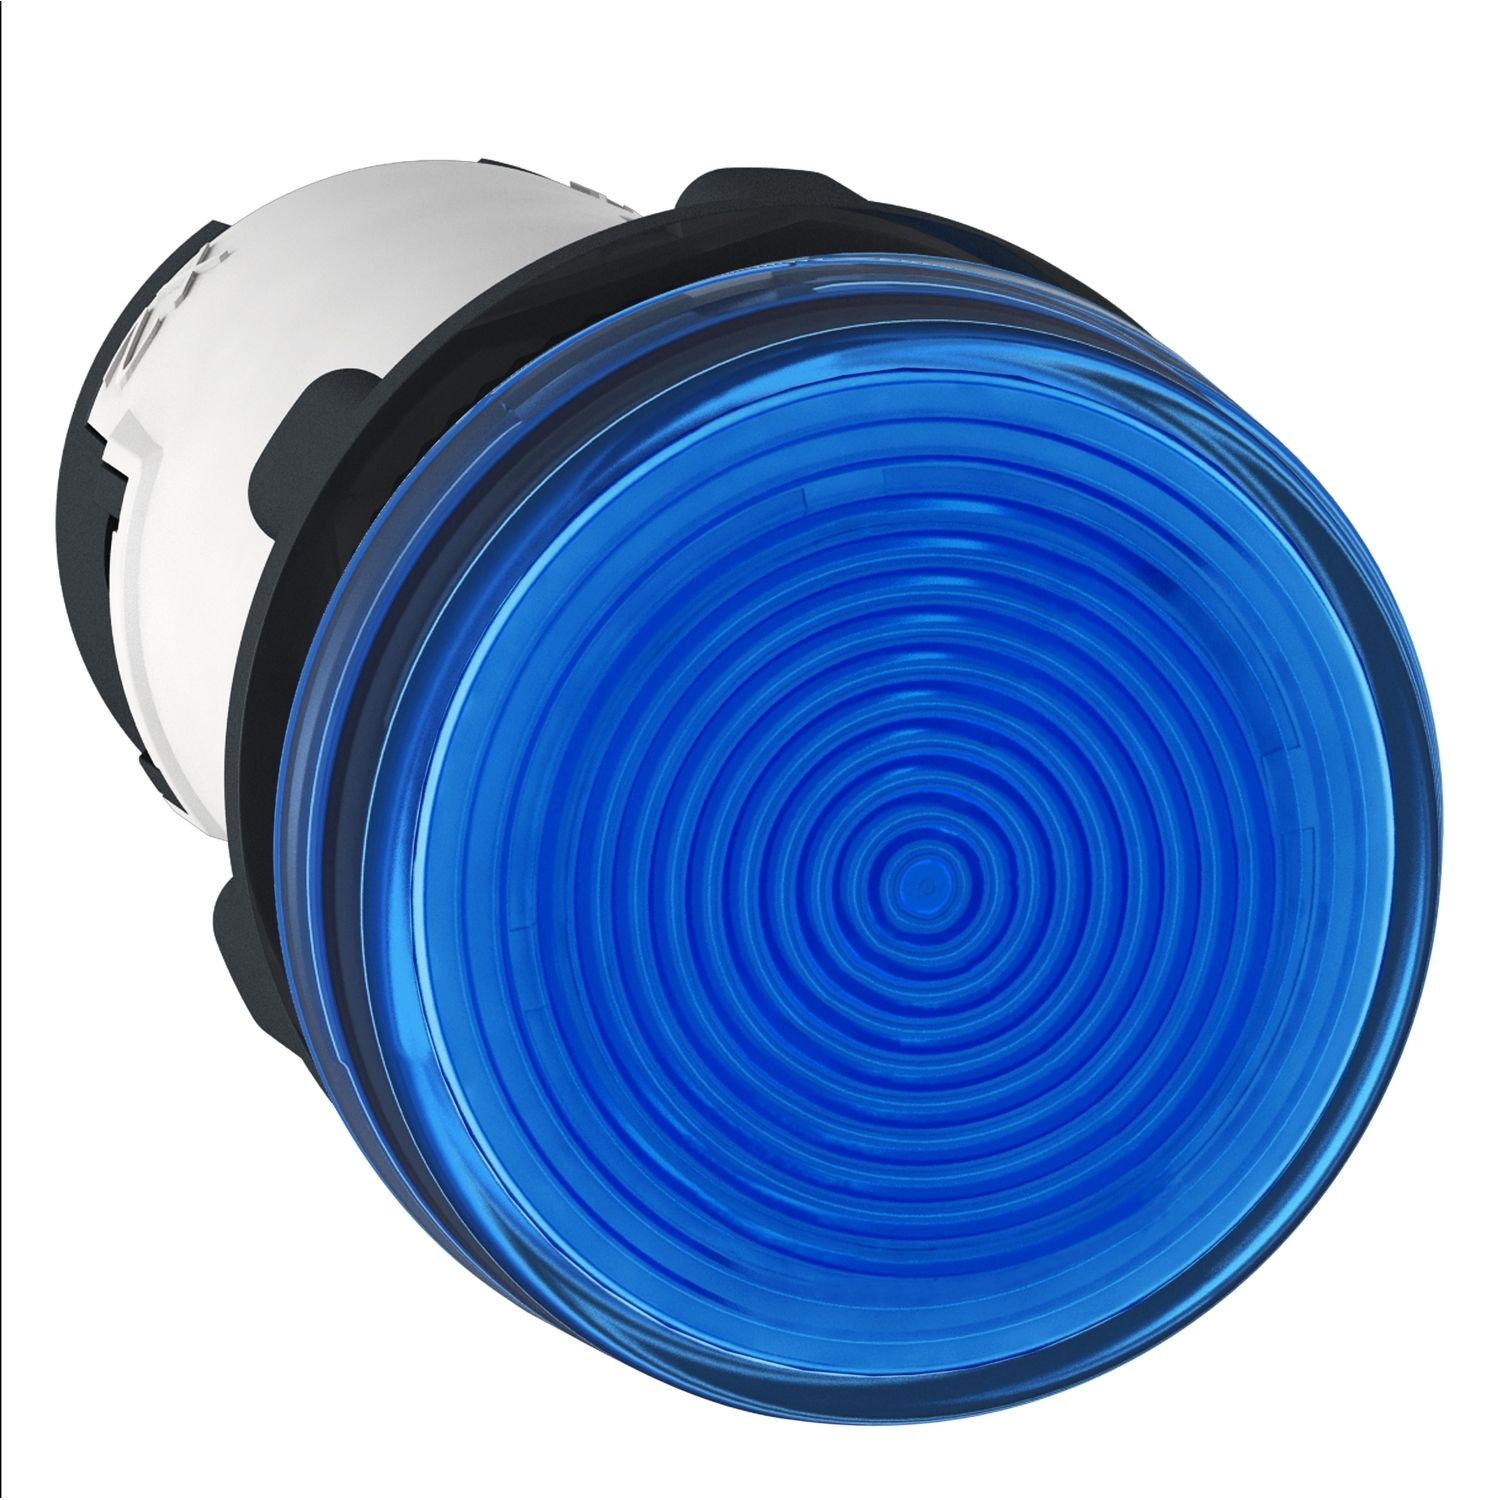 XB7EV66P Monolithic pilot light, Harmony XB7, plastic, blue, 22mm, plain lens for BA9s bulb, lt 250V